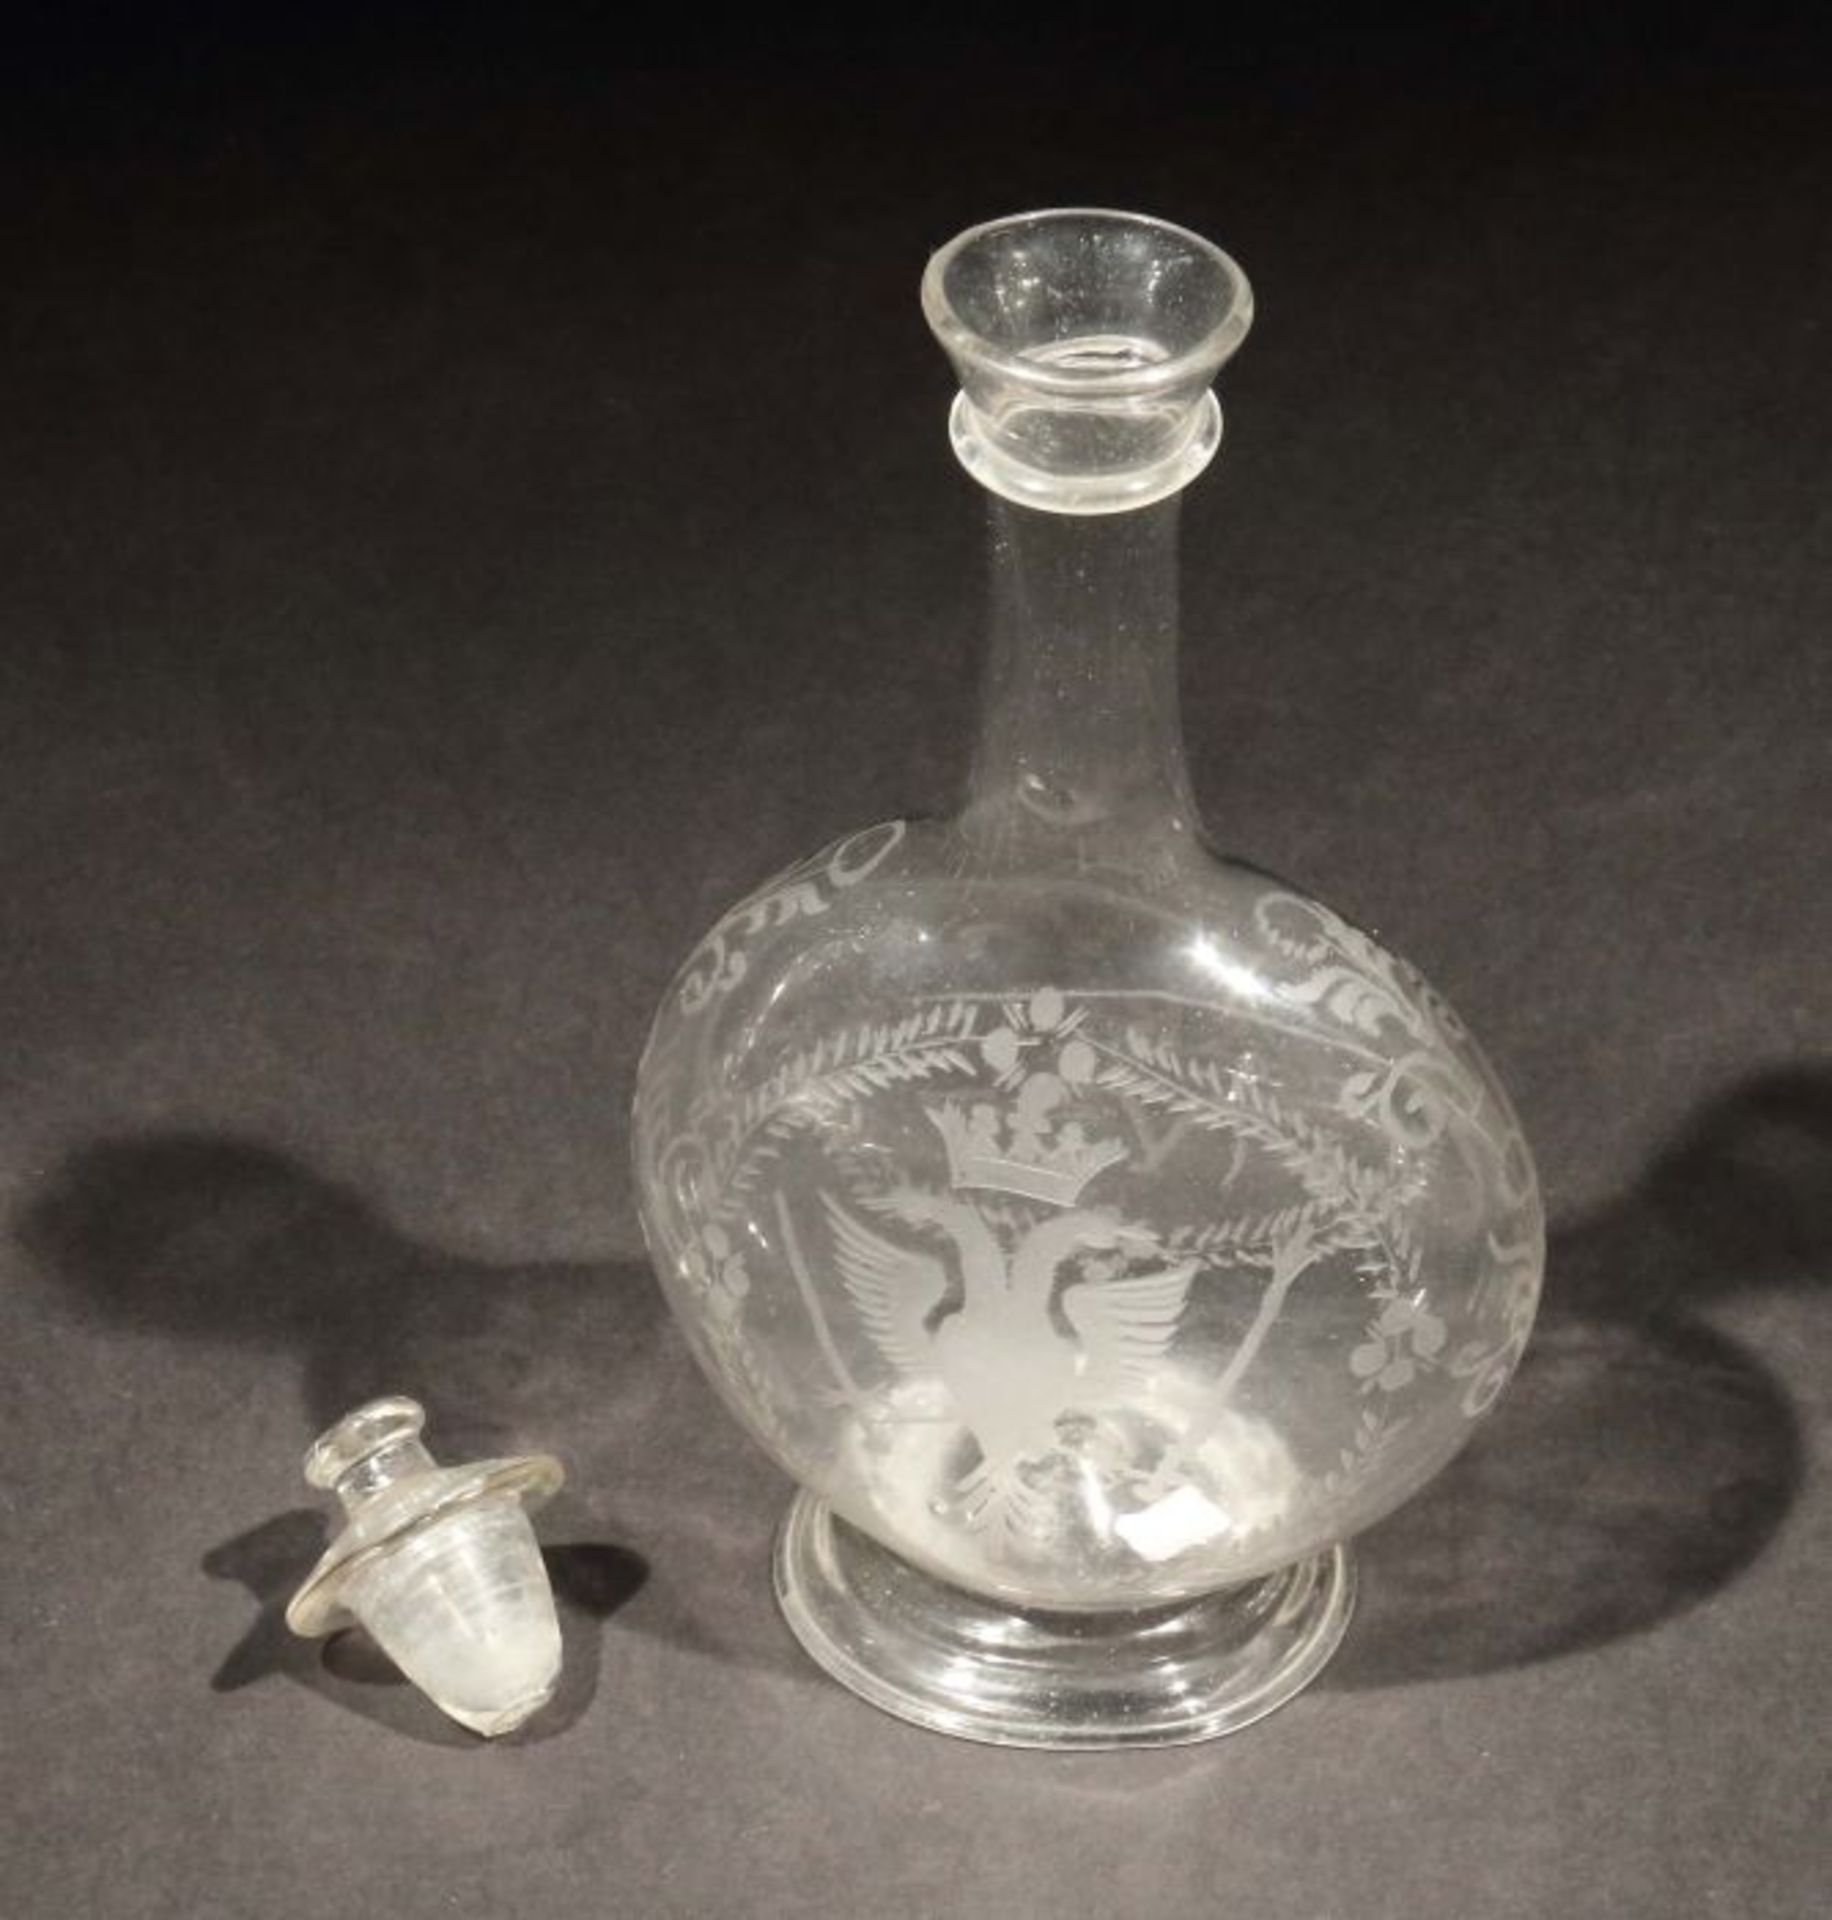 Flasche18. Jh., farbloses Glas, mundgeblasen und geschliffen, flacher runder Korpus mit engemHals, - Bild 3 aus 3